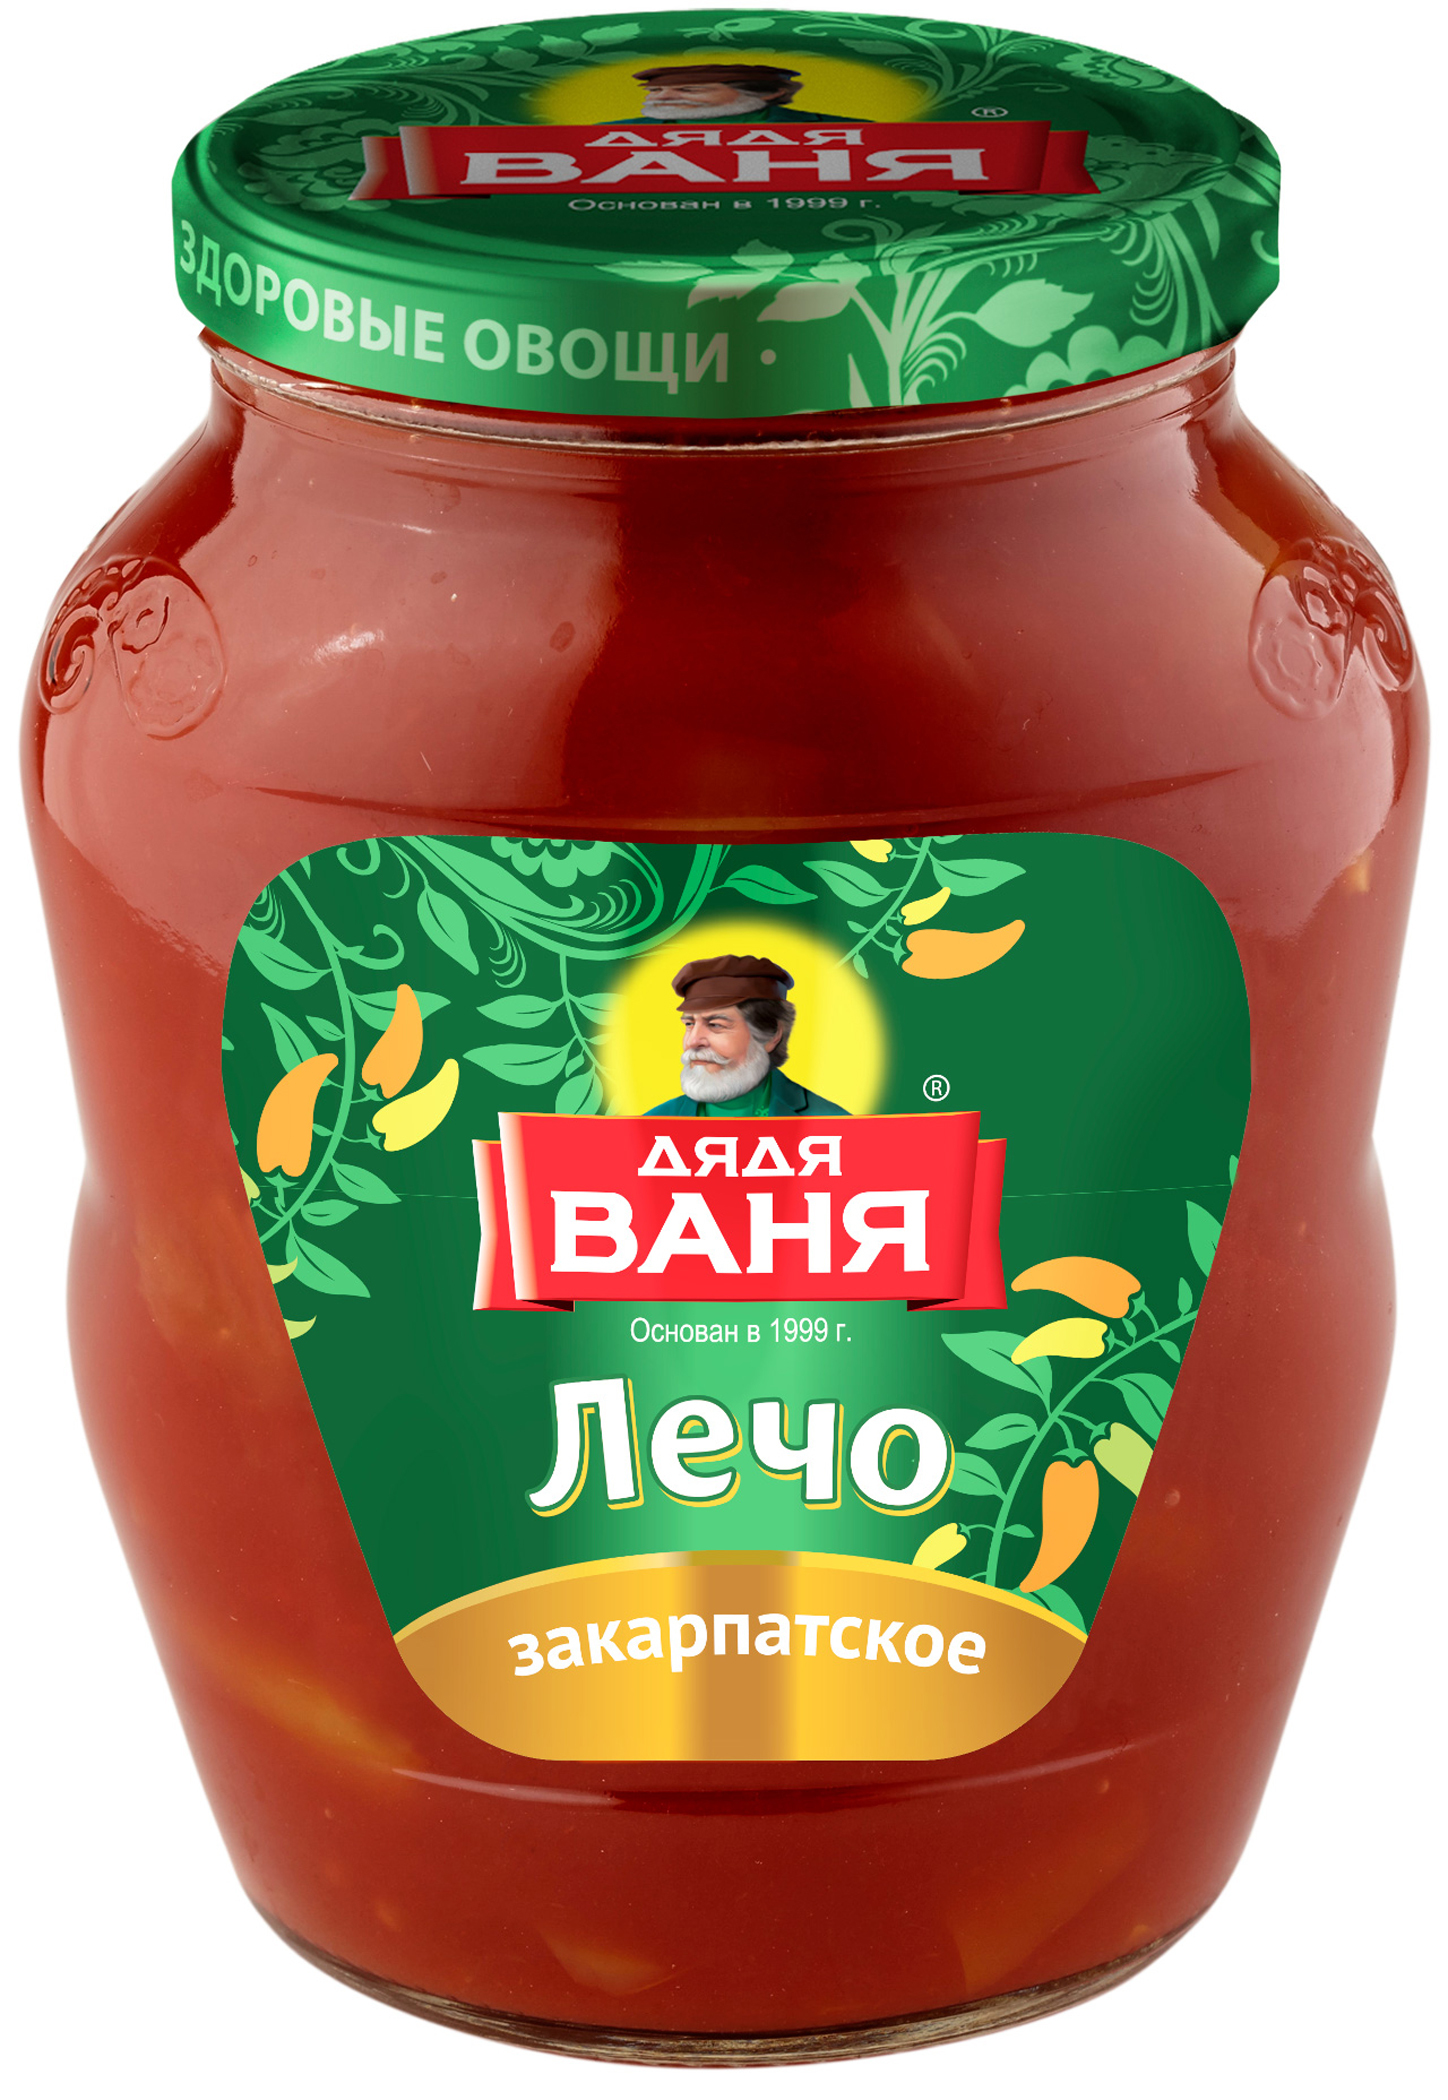 Перец в томатном соусе &#34Дядя Ваня&#34 &#34Лечо закарпатское&#34